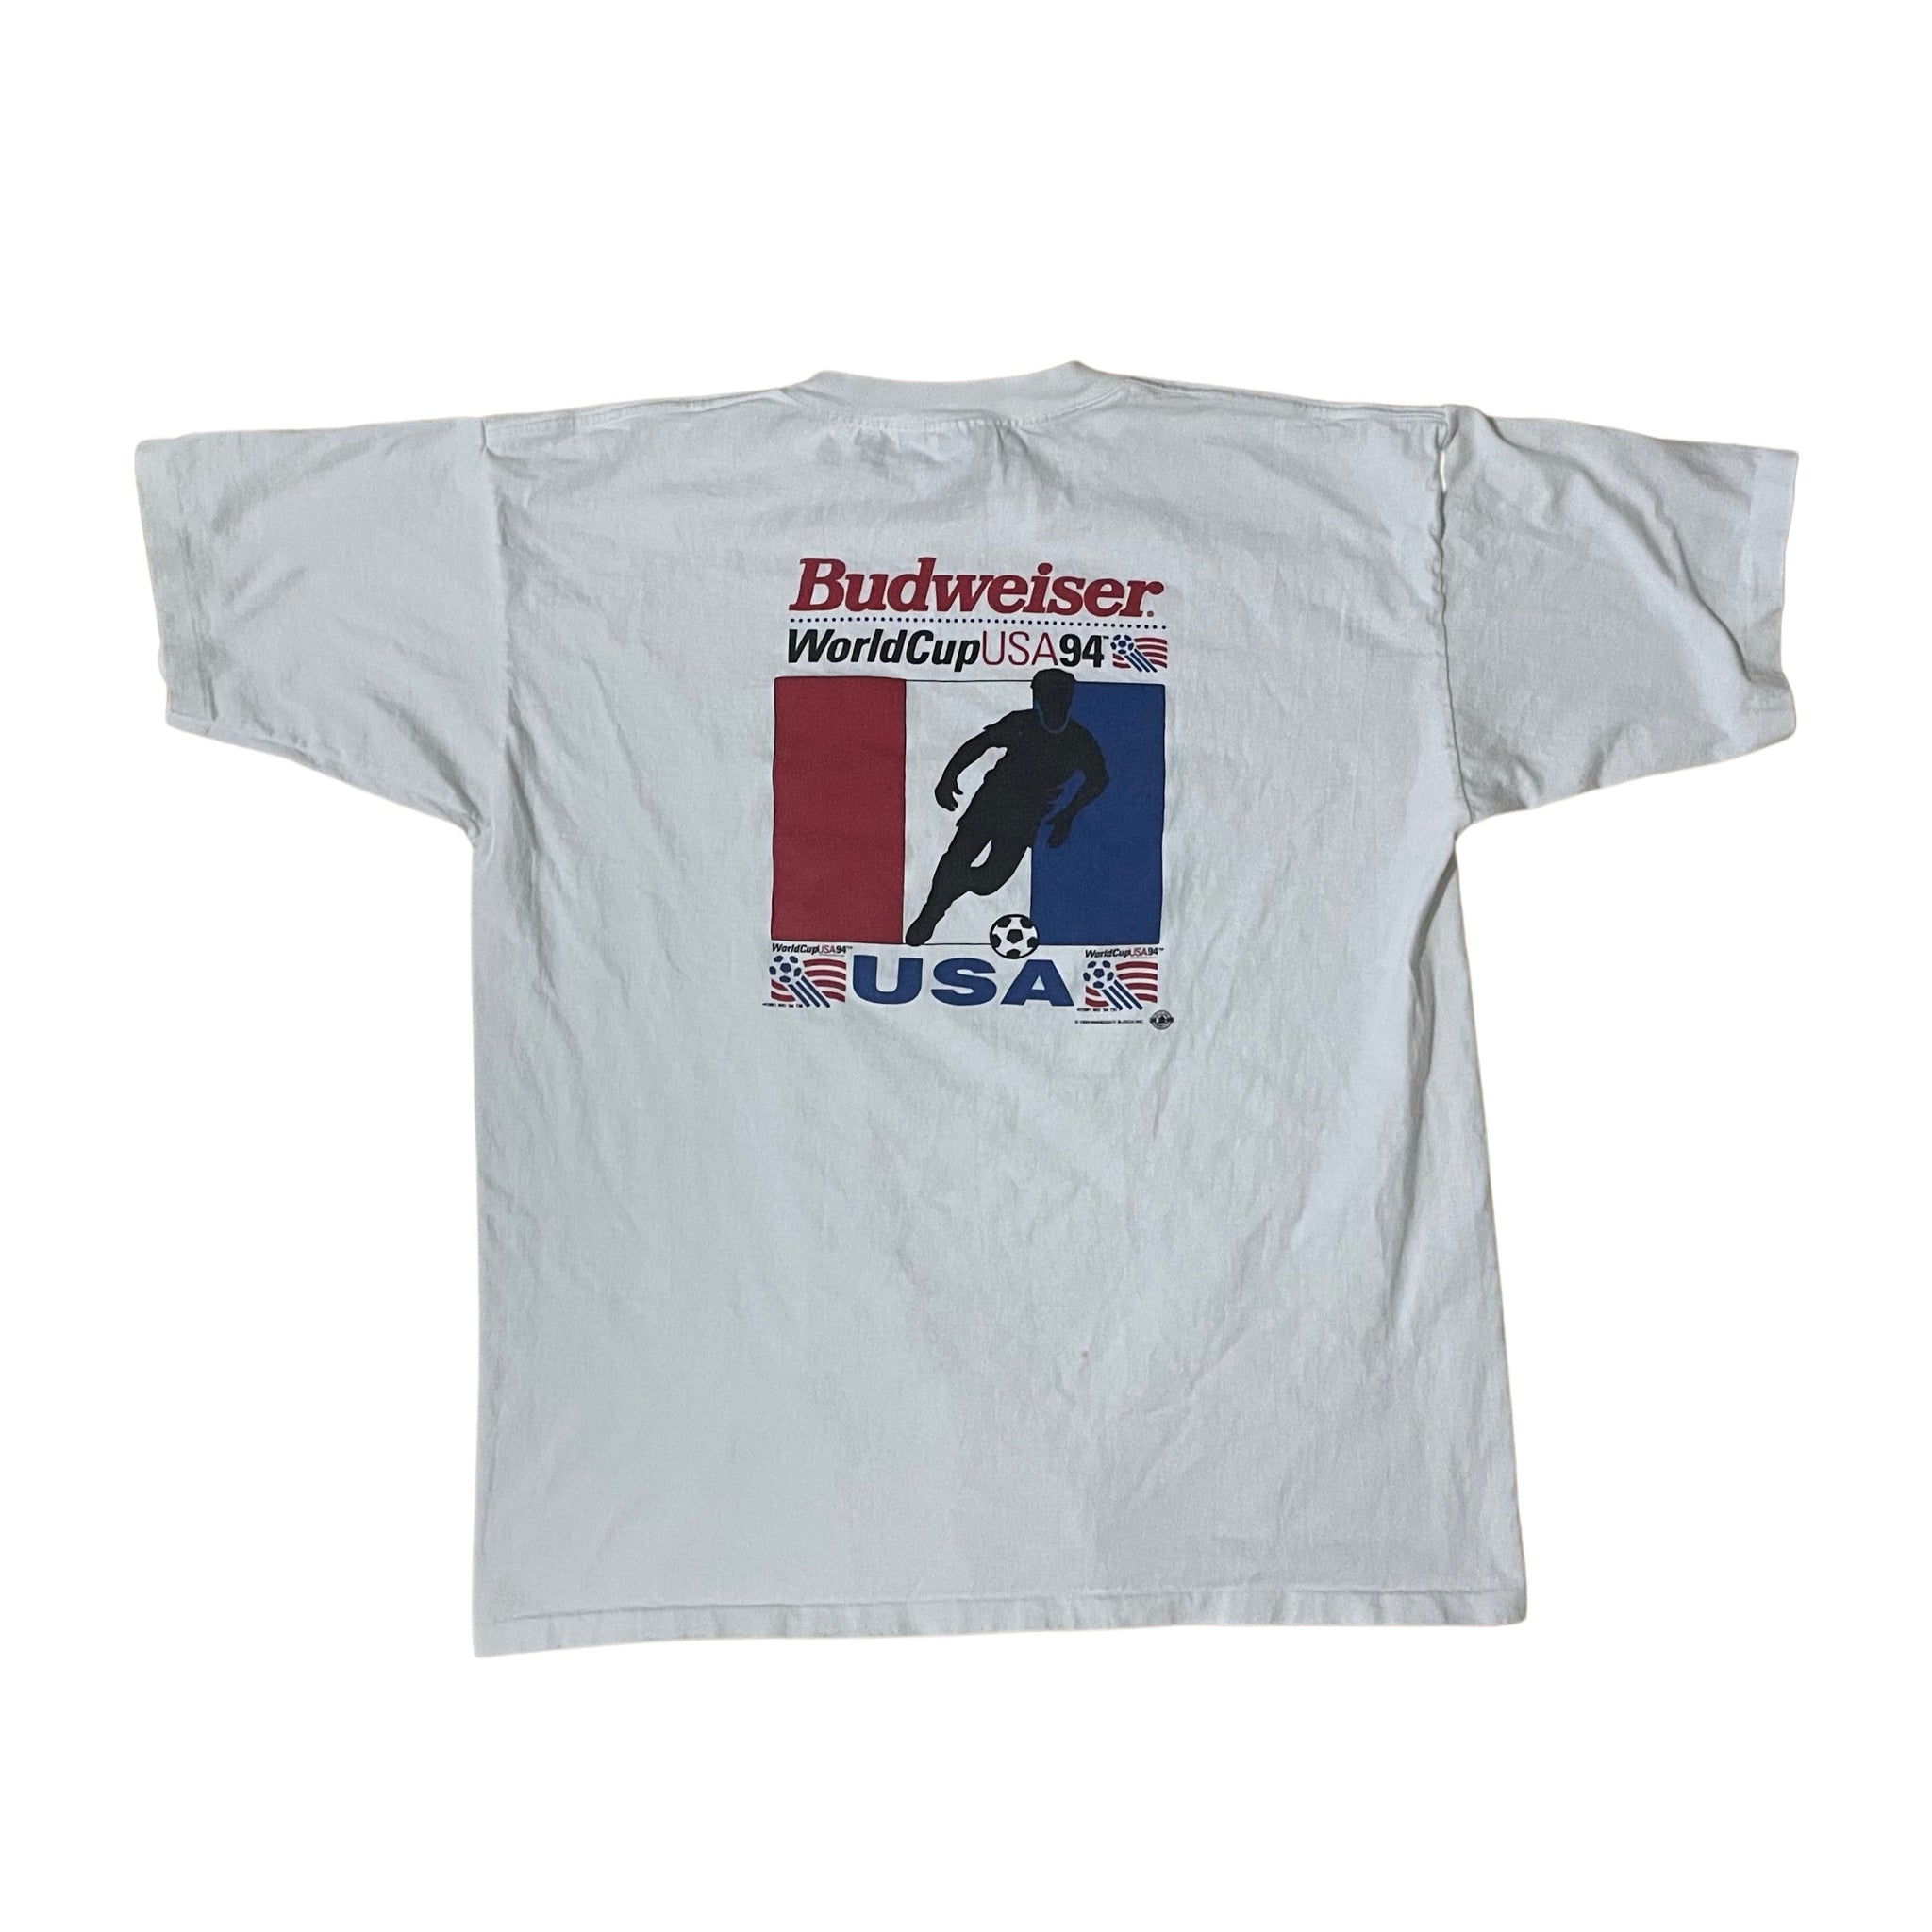 Budweiser World Cup 94 T-Shirt - L